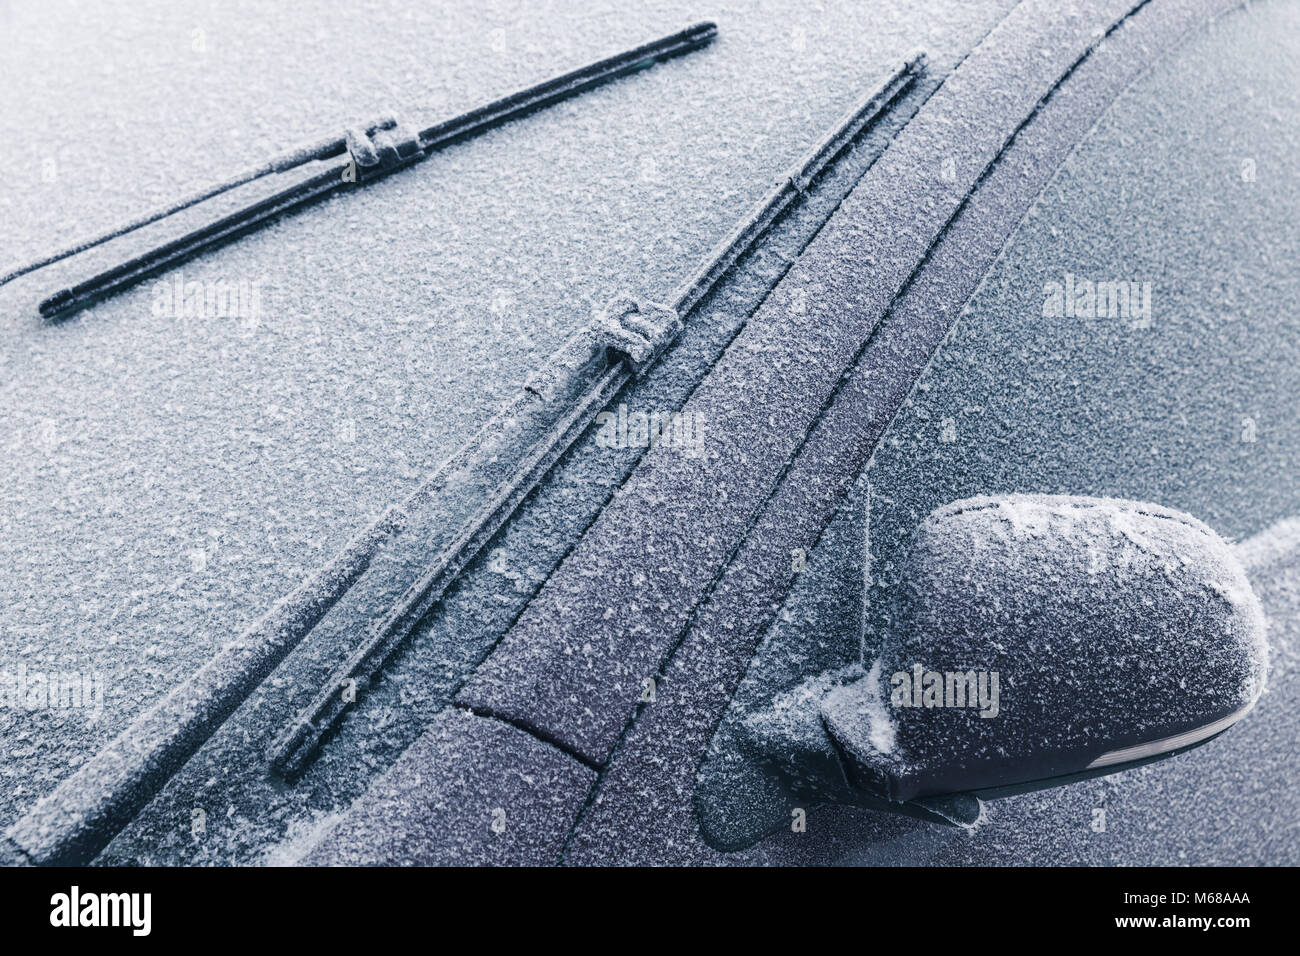 Gefrorenen Windschutzscheibe Eines Autos Mit Dem Wort Frost Lizenzfreie  Fotos, Bilder und Stock Fotografie. Image 50669196.